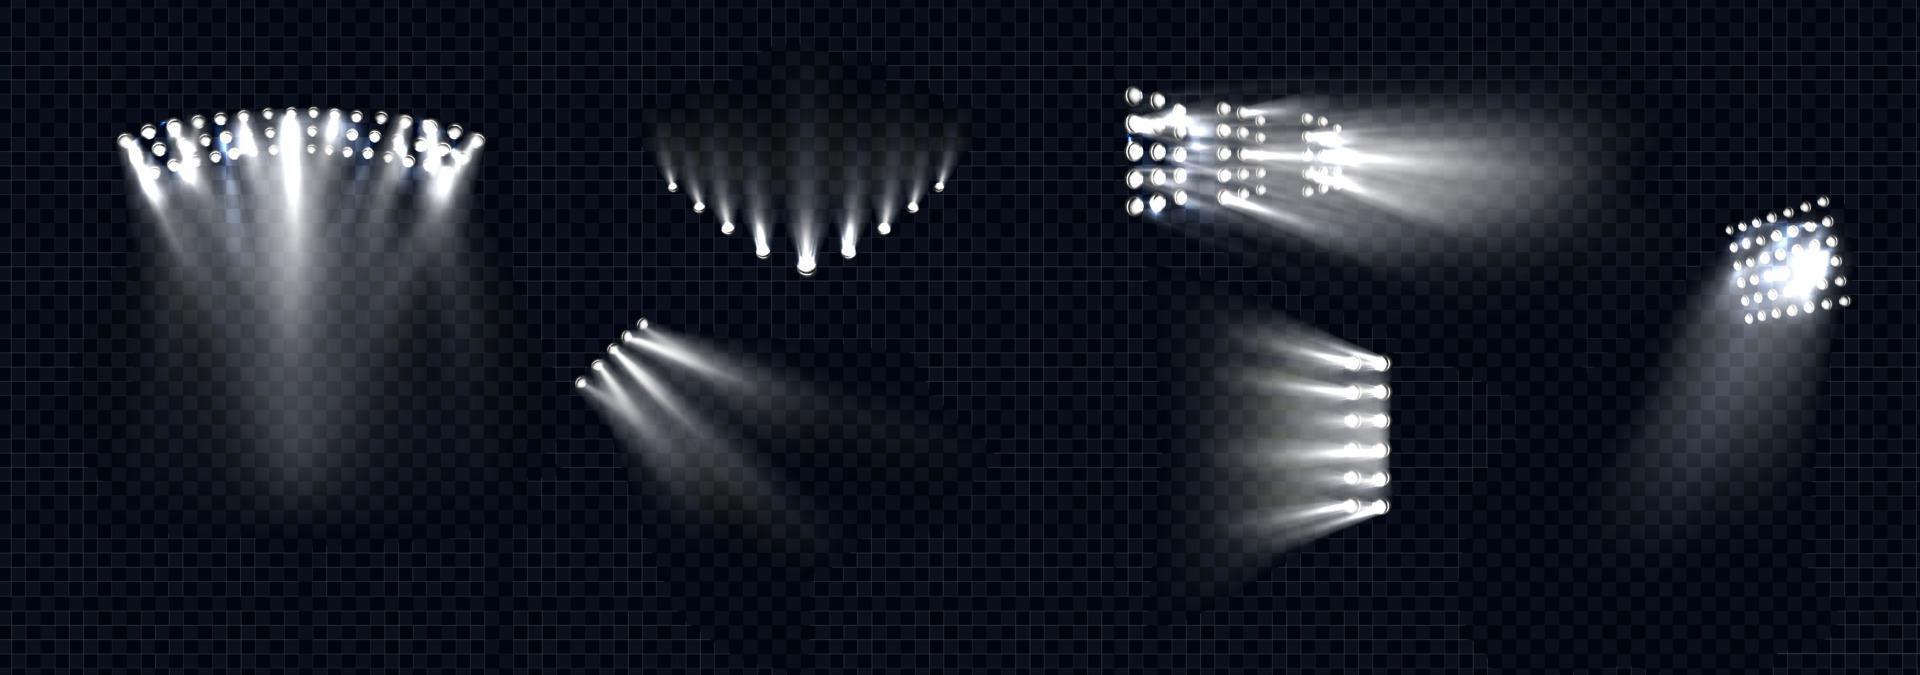 schijnwerpers, stadium licht wit balken lampen stralen reeks vector